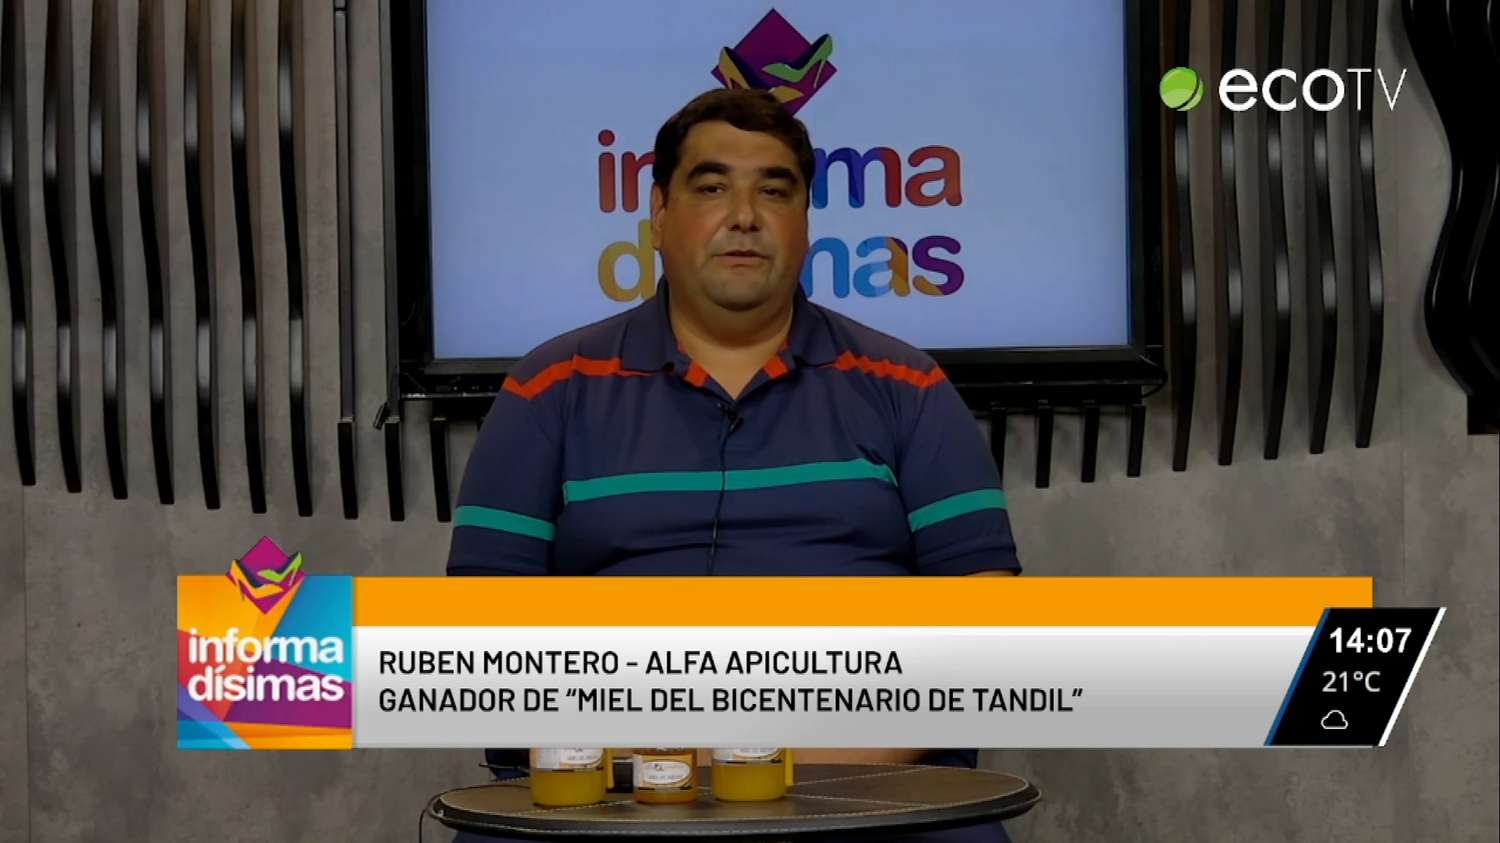 Rubén Montero, ganador de "Miel del bicentenario de Tandil" en Informadísimas